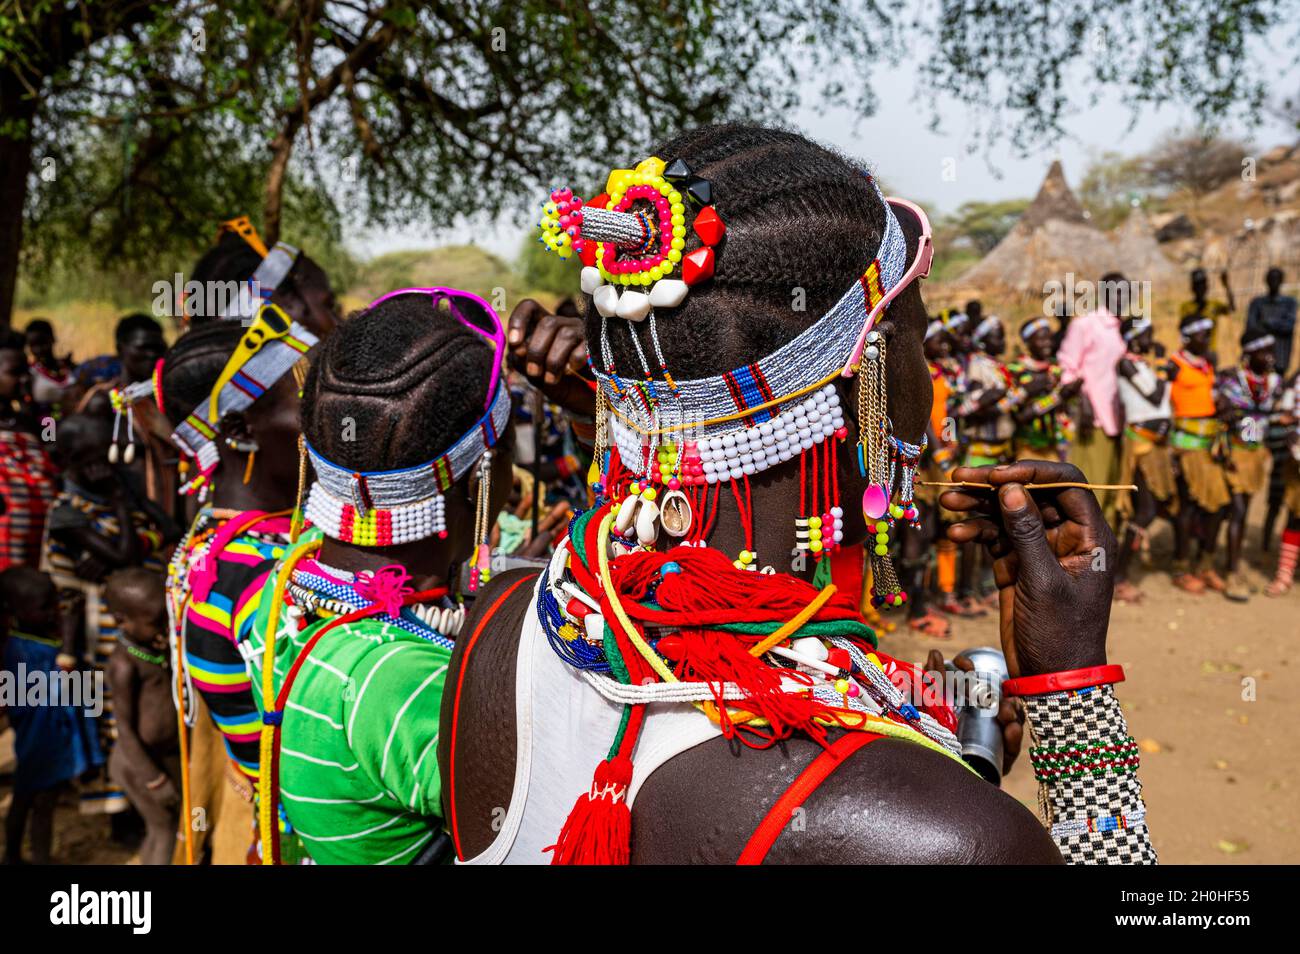 Traditionell gekleidete junge Mädchen üben lokale Tänze, Laarim Stamm, Boya Hügel, Eastern Equatoria, Südsudan Stockfoto